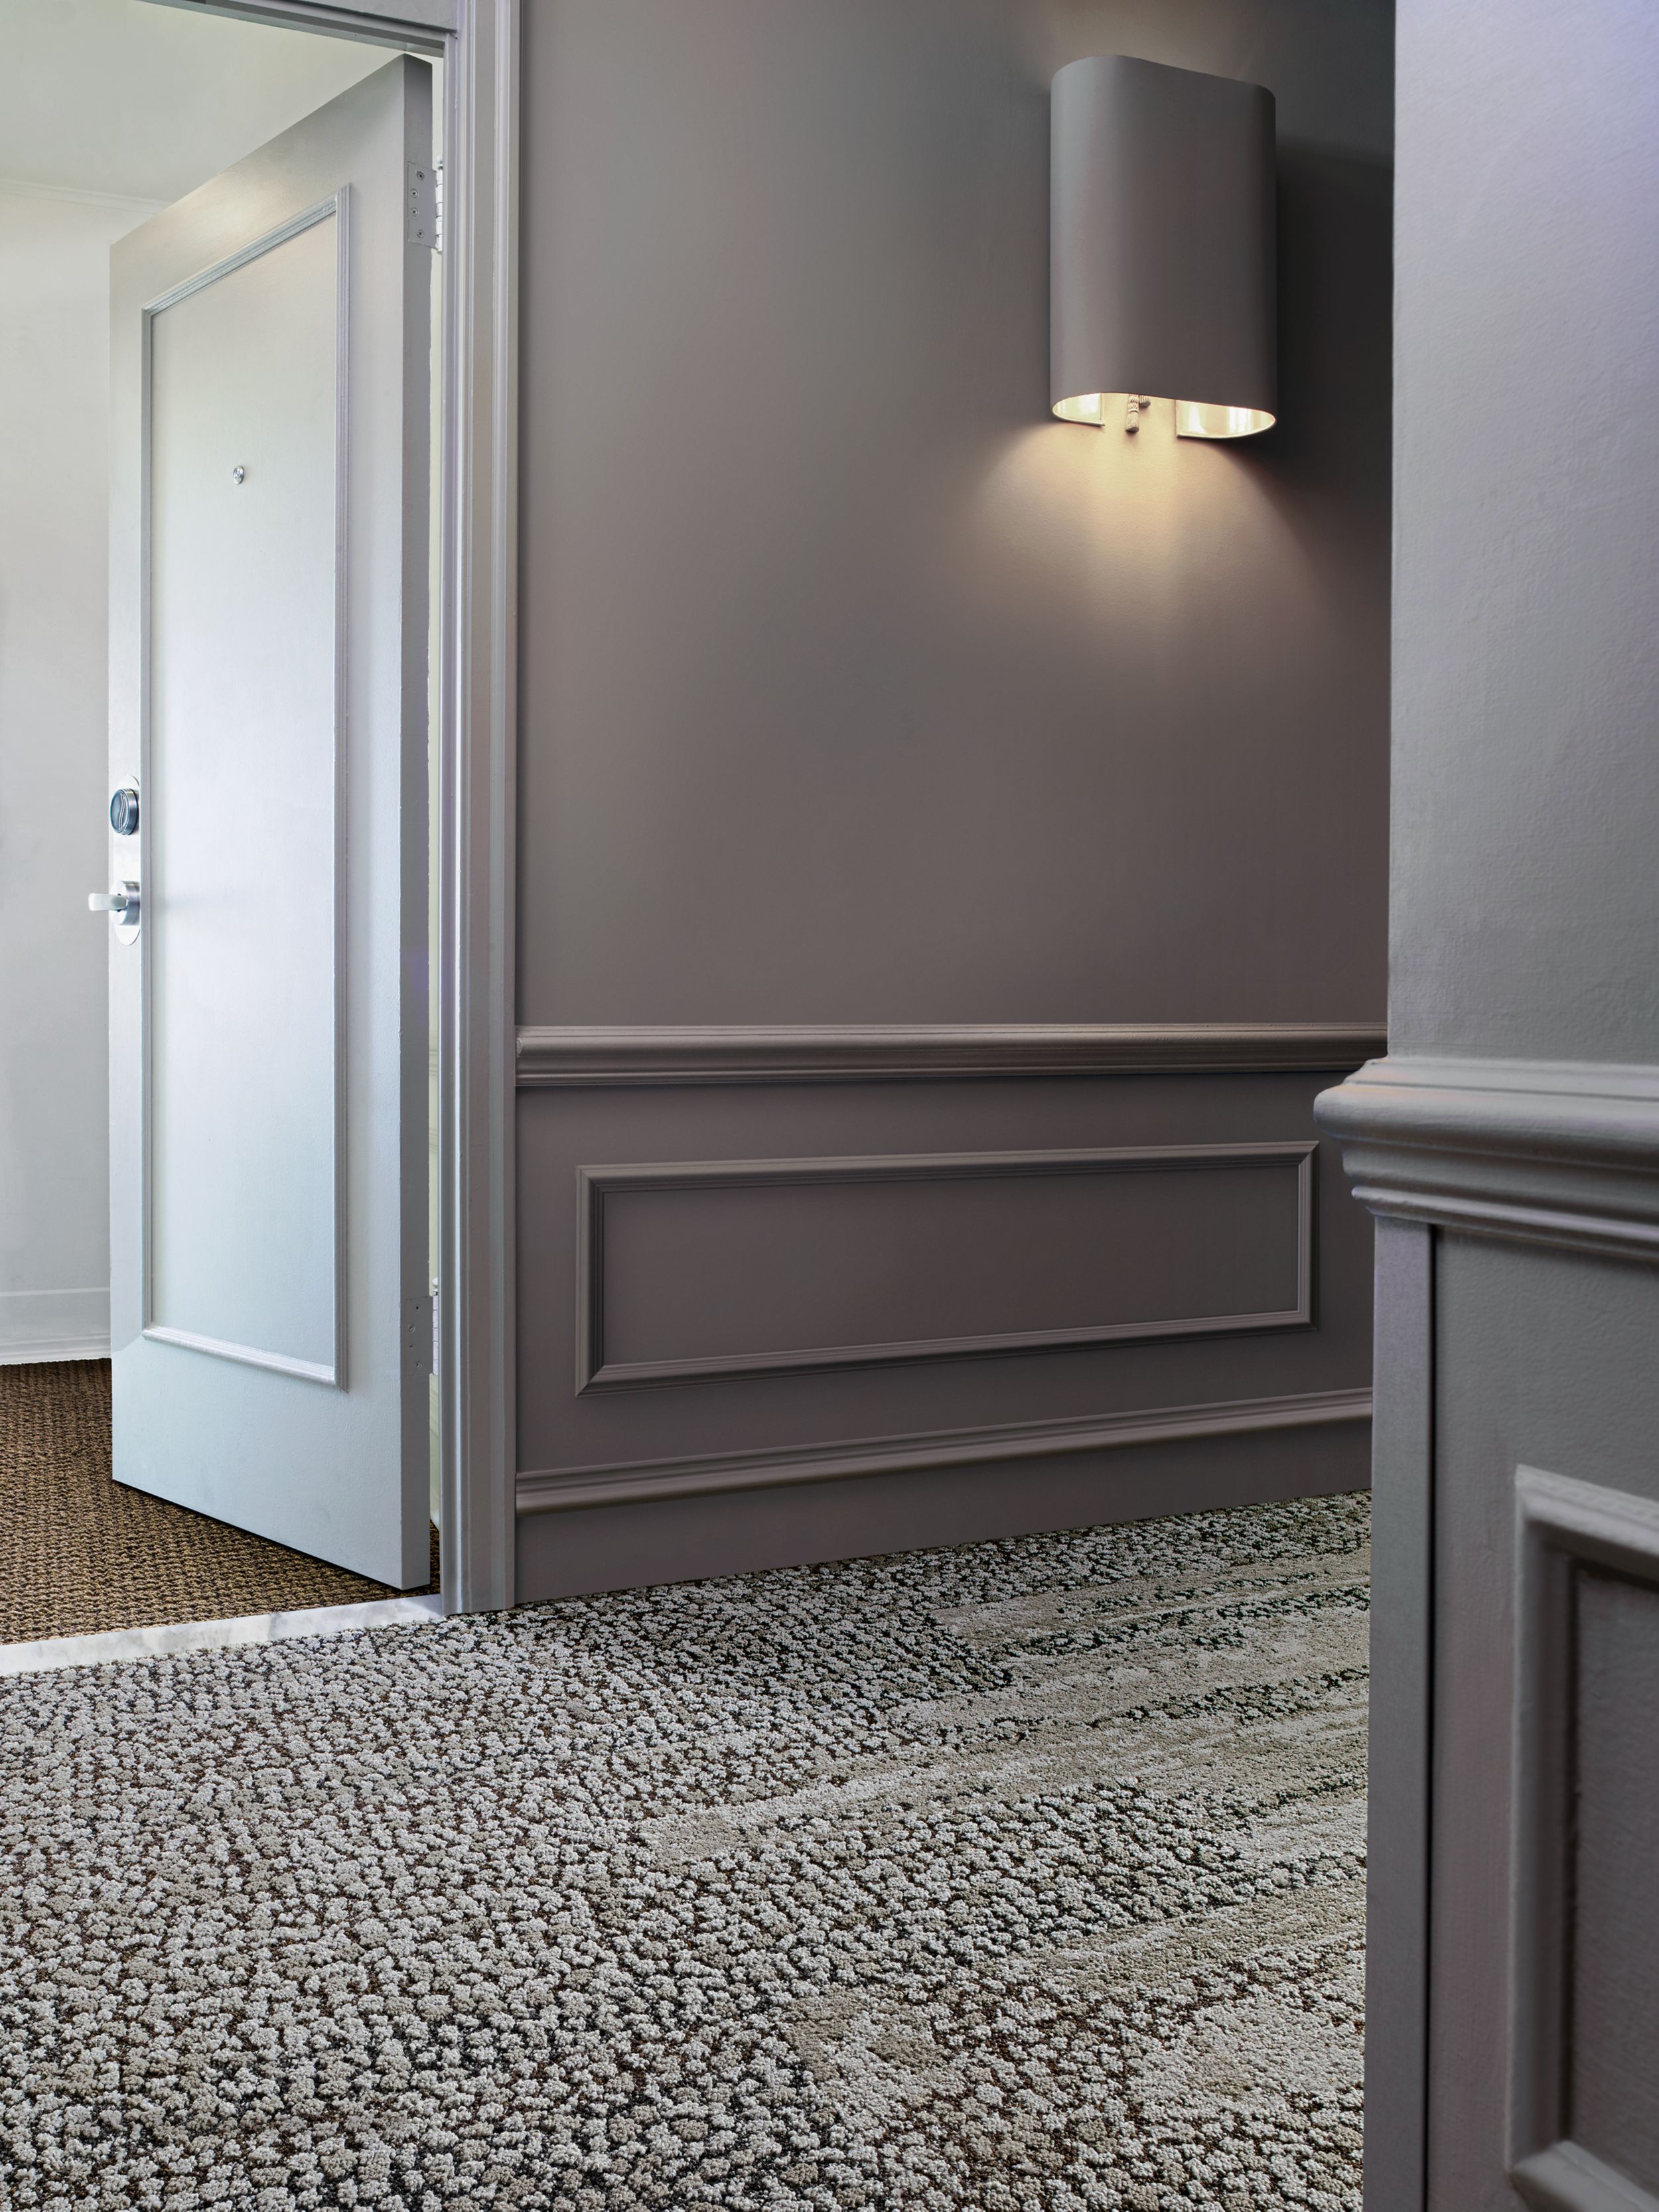 Interface HN840, HN850 and RMS 607 plank carpet tiles in hotel hallway with hotel room door ajar número de imagen 12